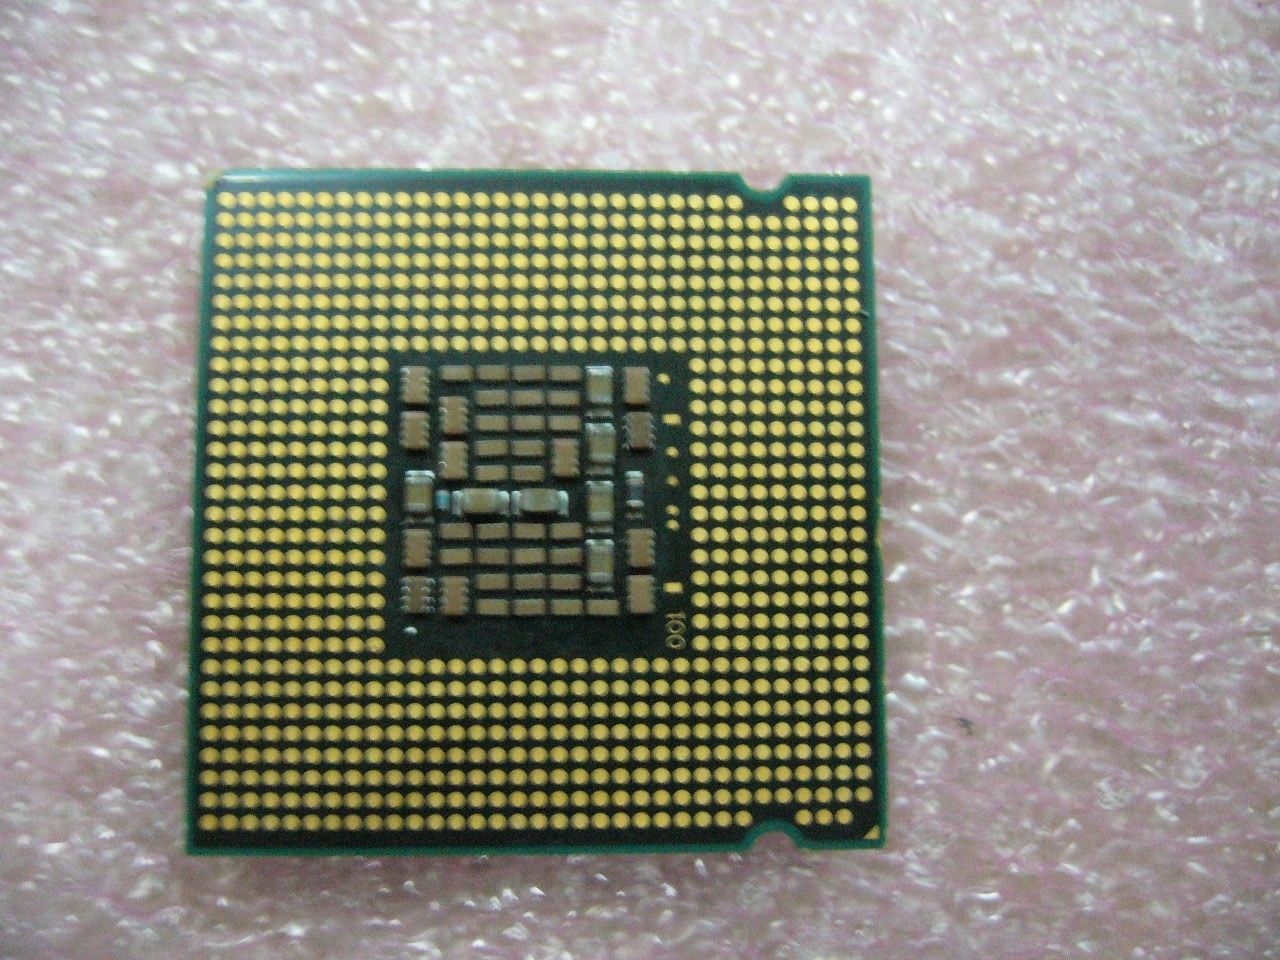 INTEL Pentium D 925 CPU 3.0GHz 4MB/800Mhz LGA775 SL9KA - Click Image to Close